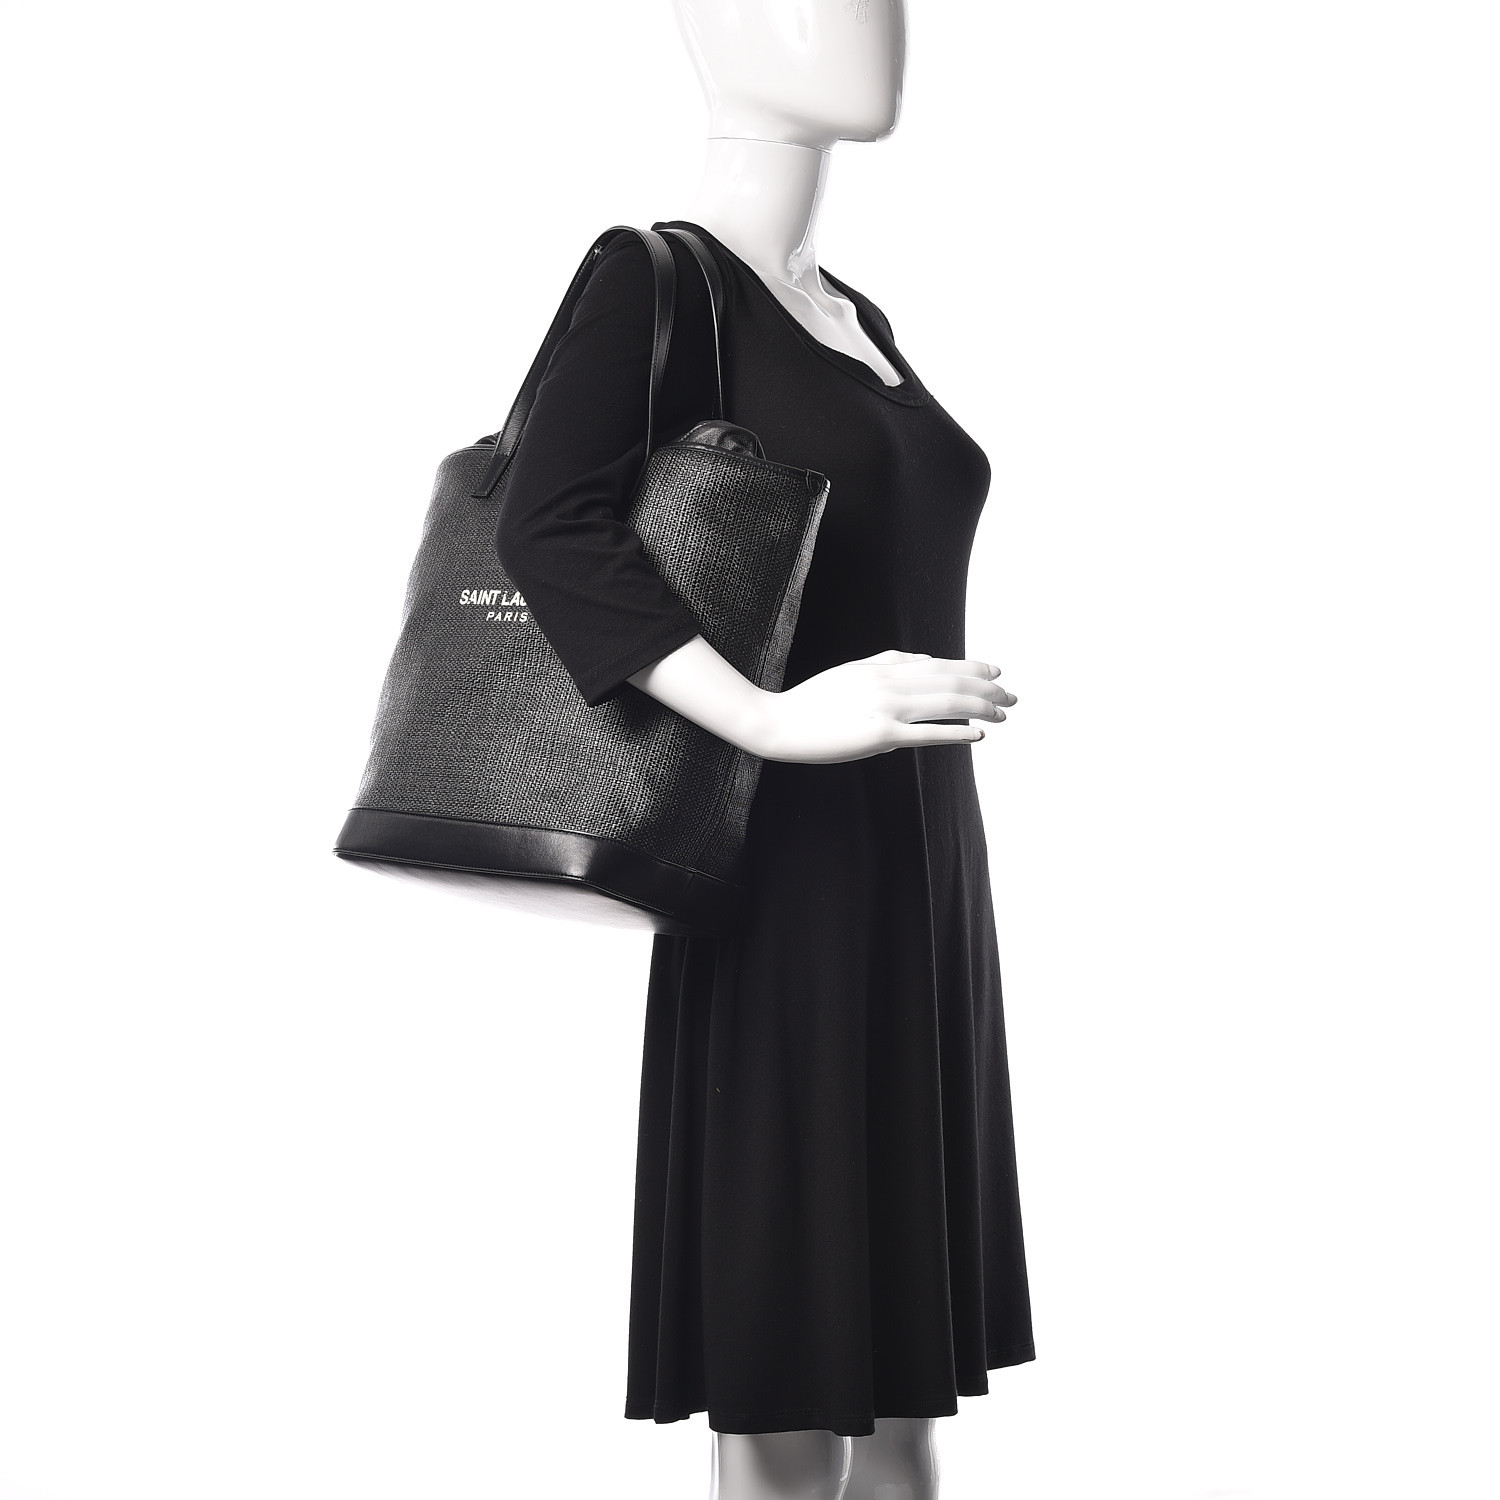 Saint Laurent Linen Canvas Teddy Shopping Bag Black 416497 Fashionphile